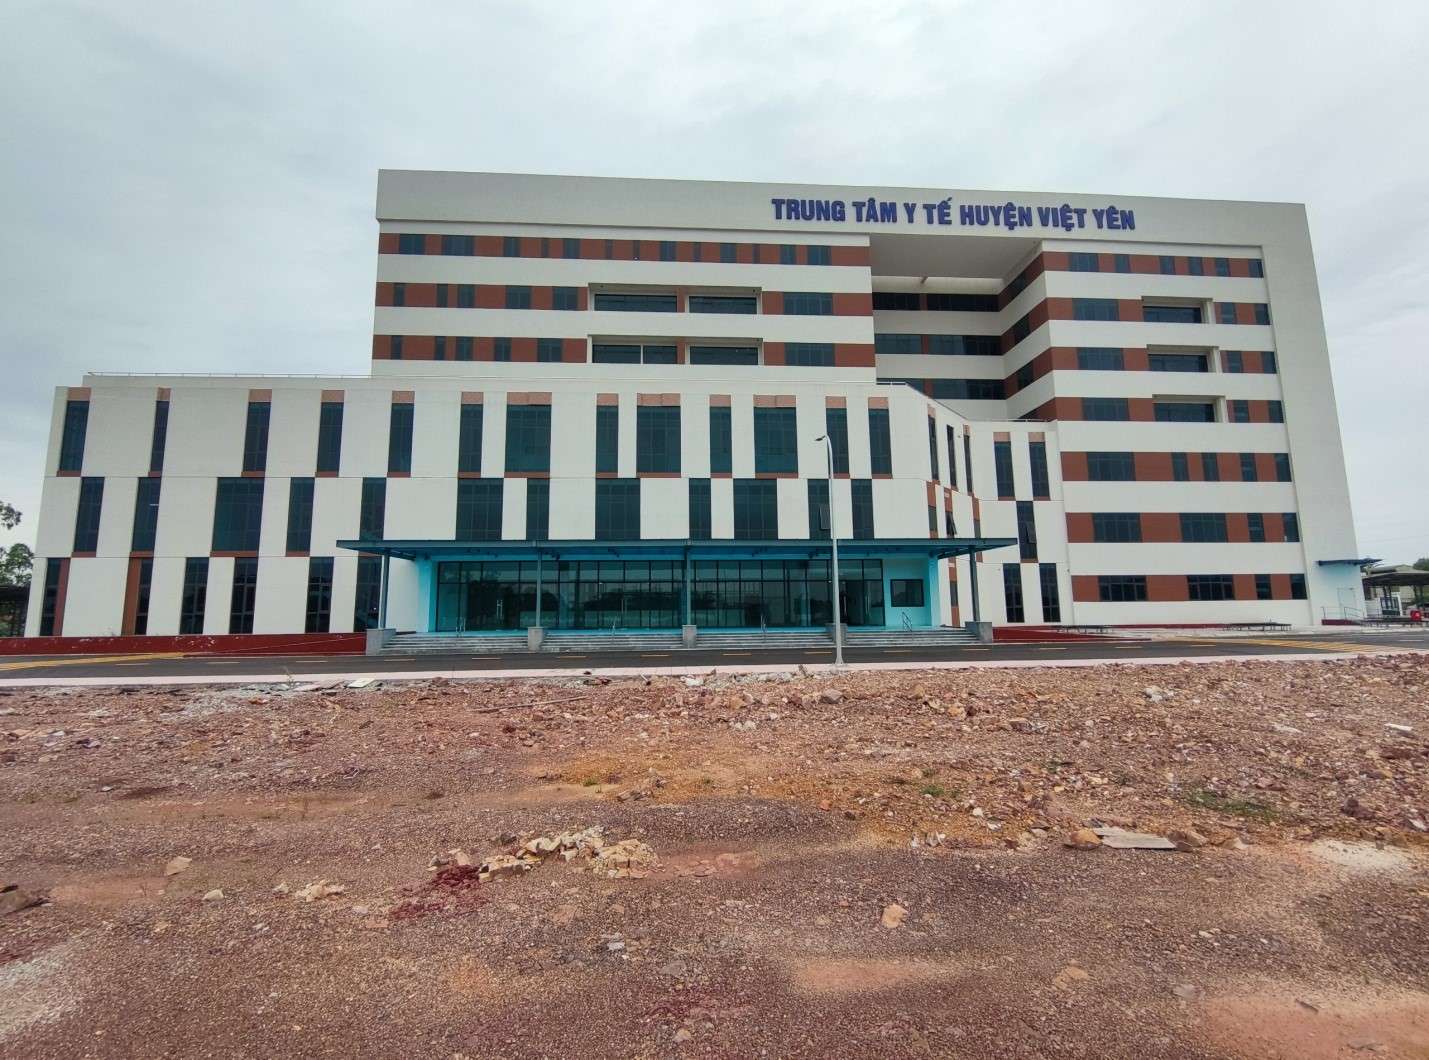 Trung tâm y tế huyện Việt Yên